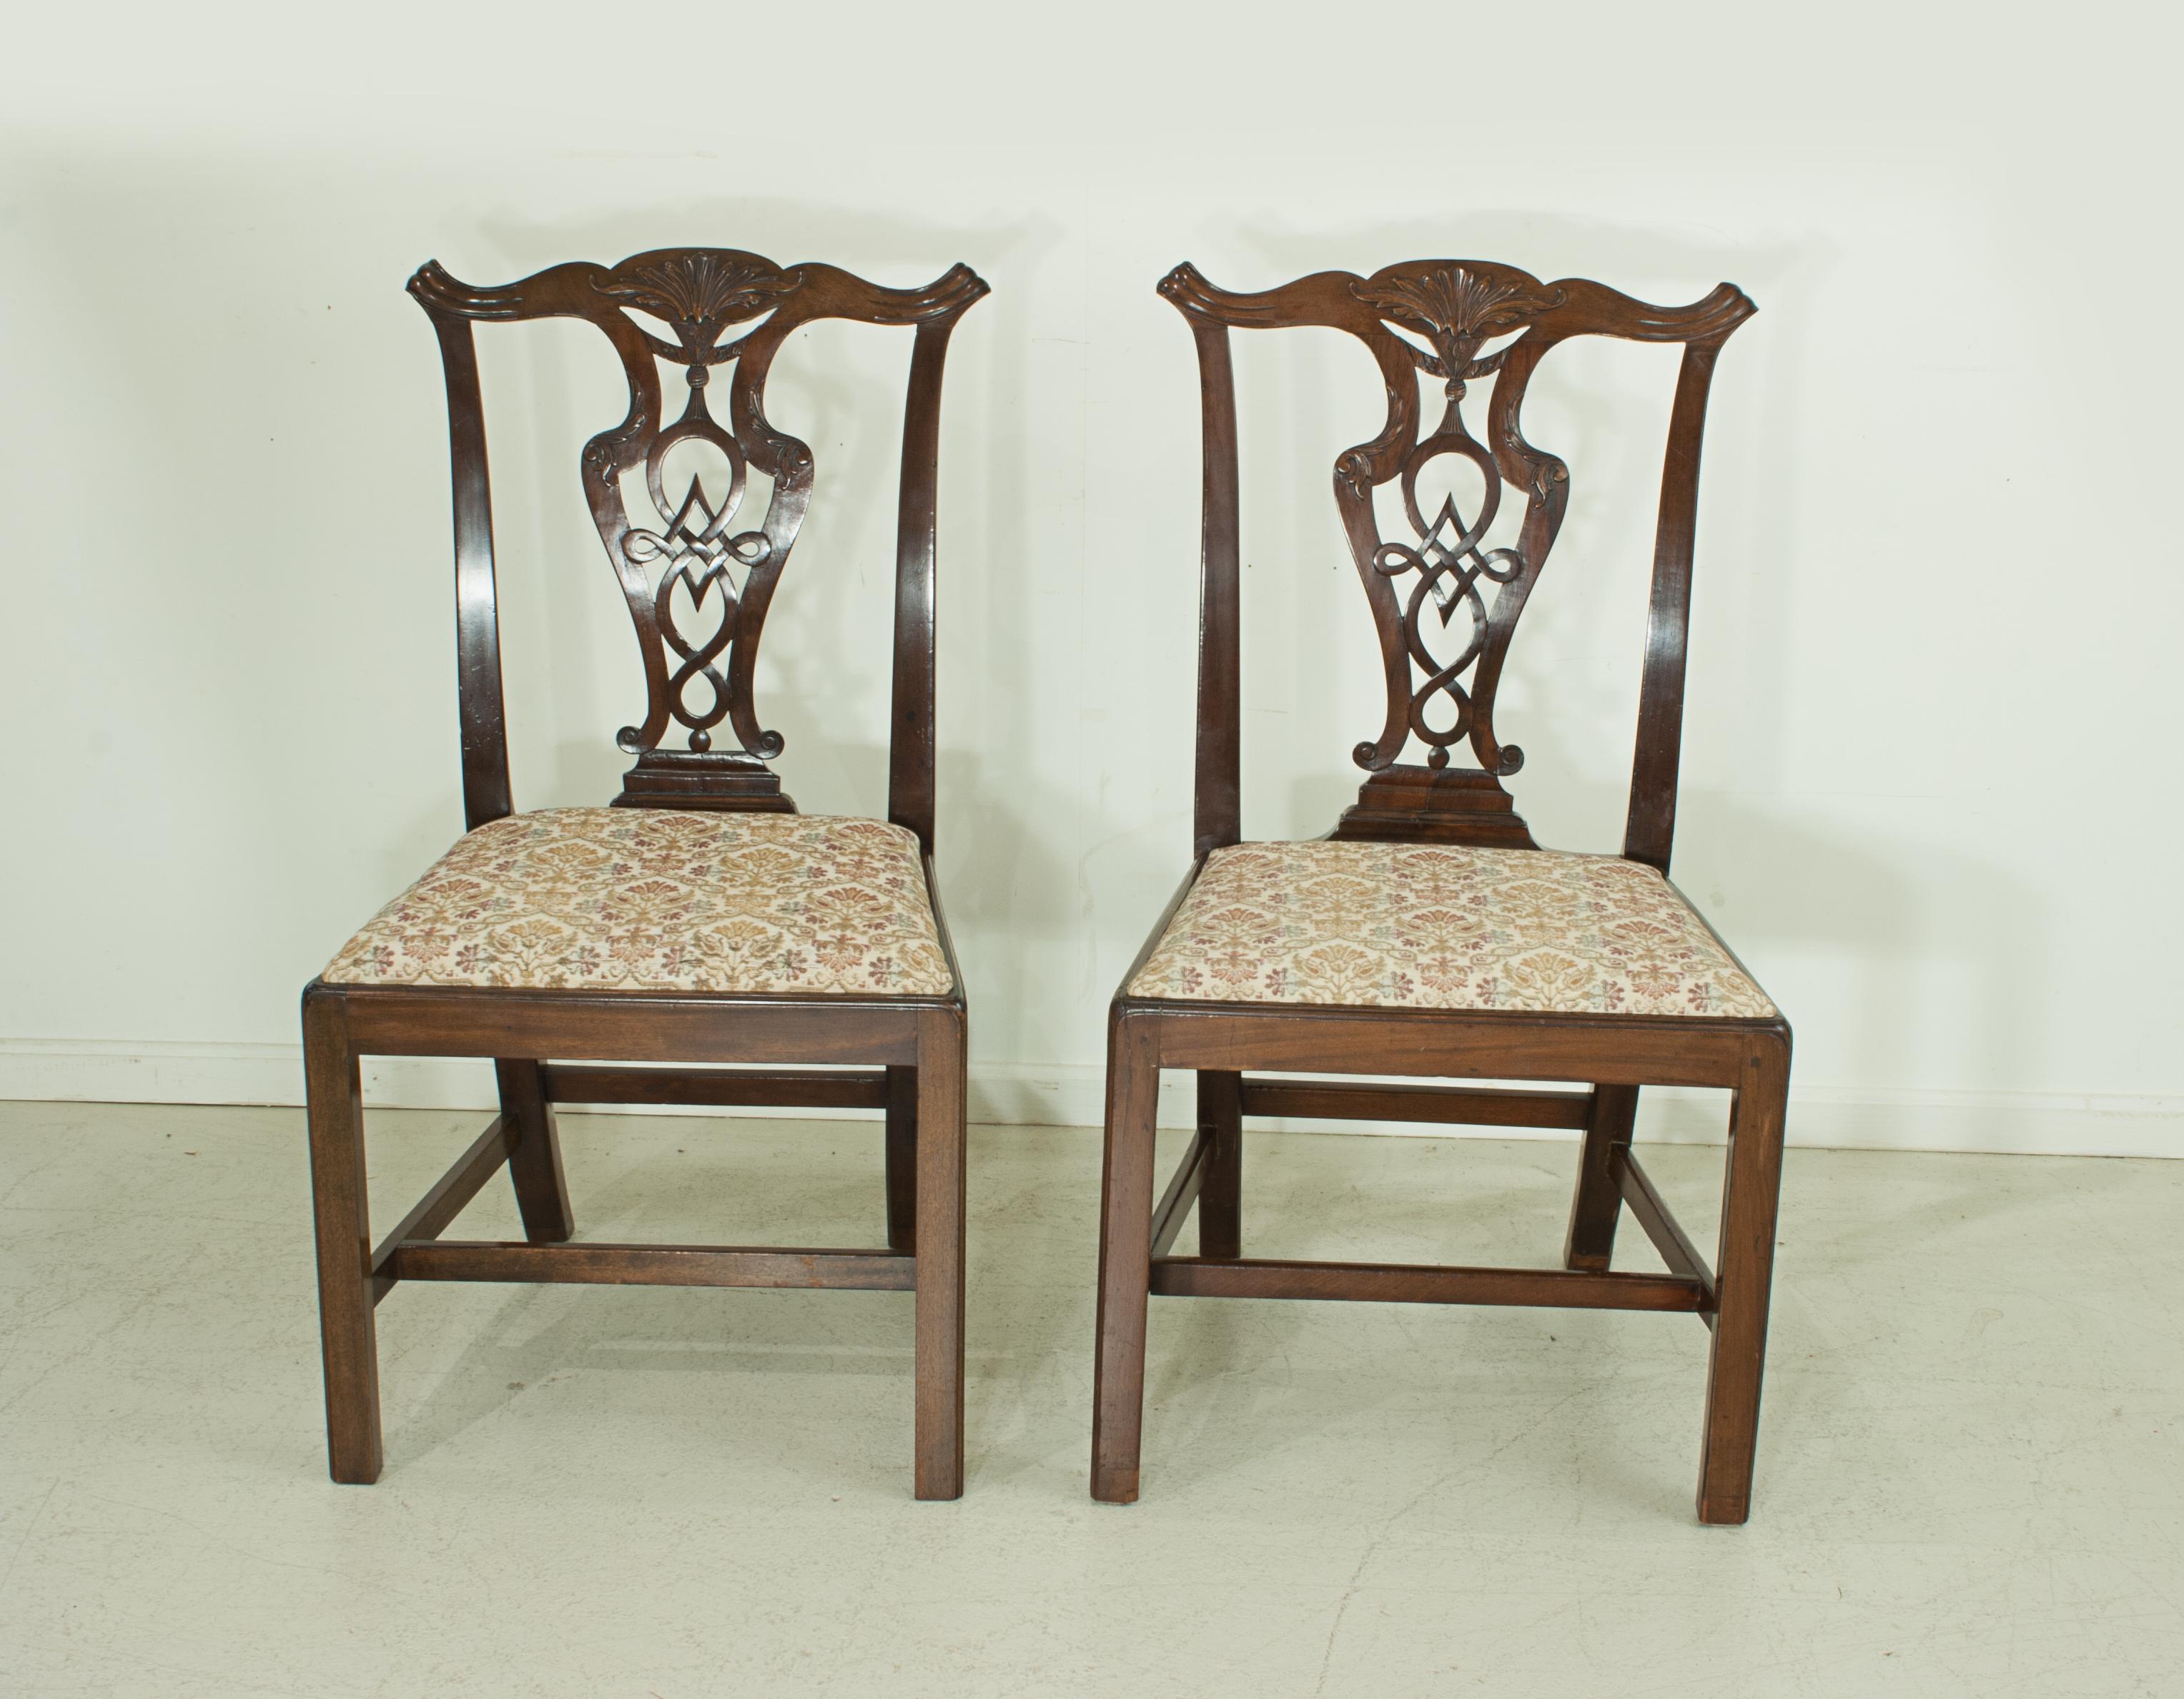 Ein Paar Mahagoni-Esszimmerstühle im Chippendale-Stil.
Ein Paar Mahagoni-Esszimmerstühle sehr guter Qualität aus dem frühen 19. Jahrhundert im Chippendale-Stil. Die Stühle mit kunstvoll geschnitzten Rückenlehnen und versenkbaren